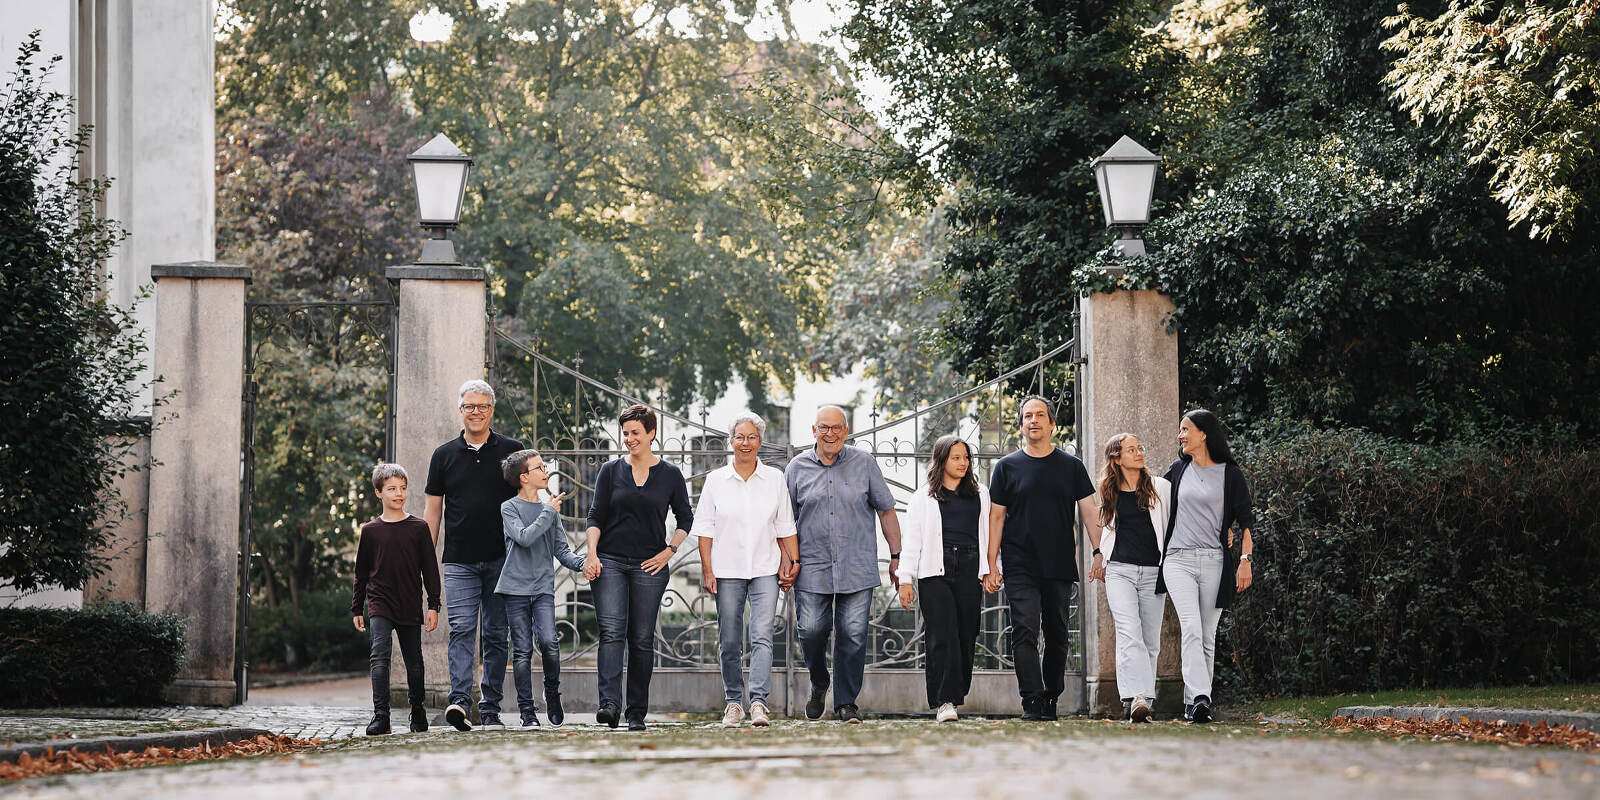 Lichtbildwerkstatt Aurich Familienfotografie in der Natur professionelles Fotoshooting grosse Familien